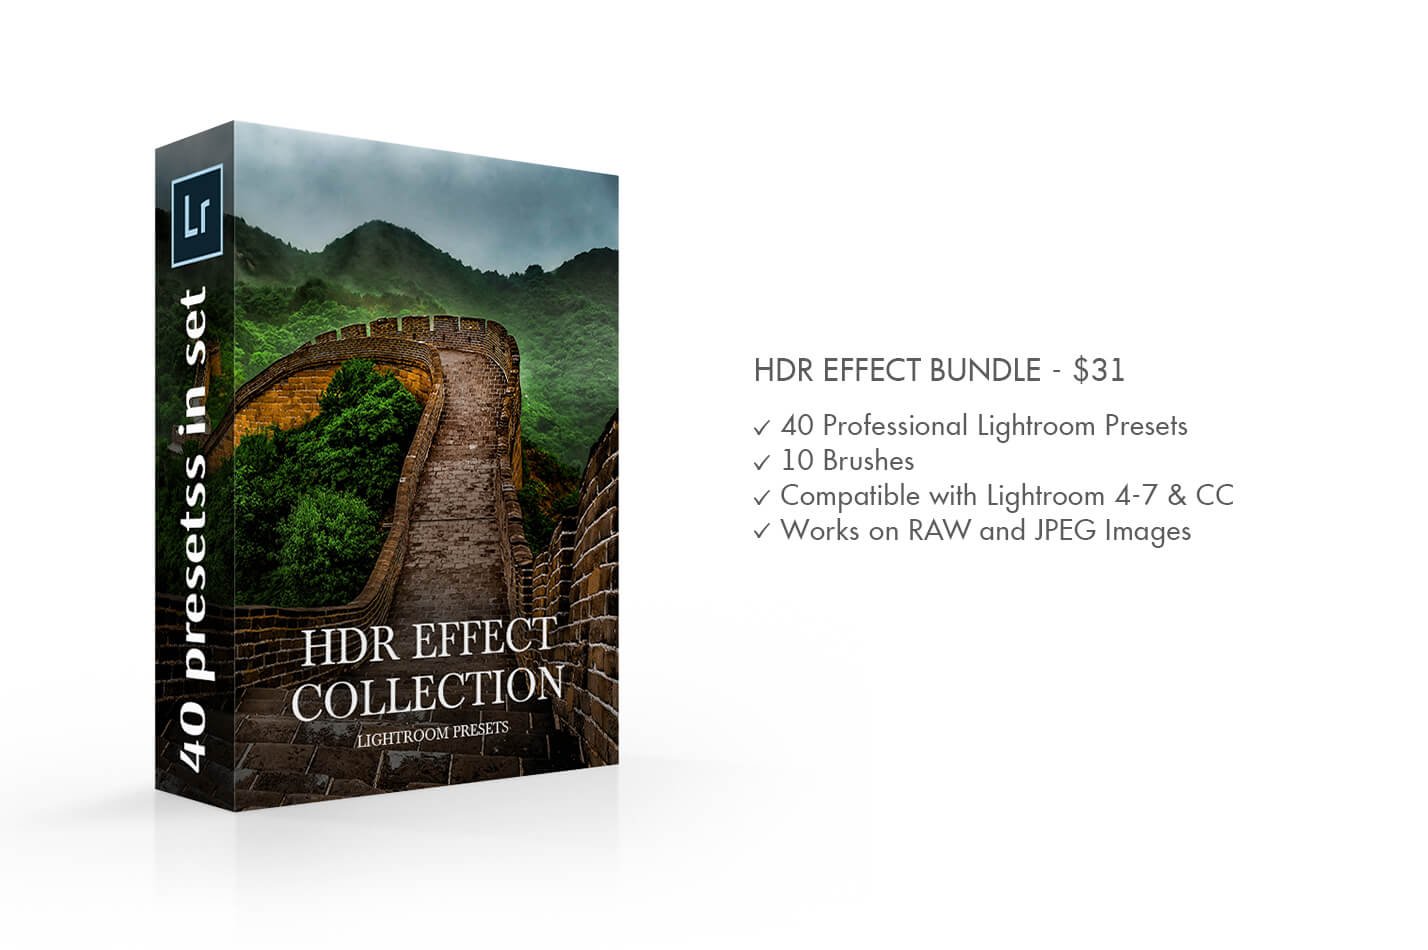 HDR Effect Lightroom Presetspreview image.